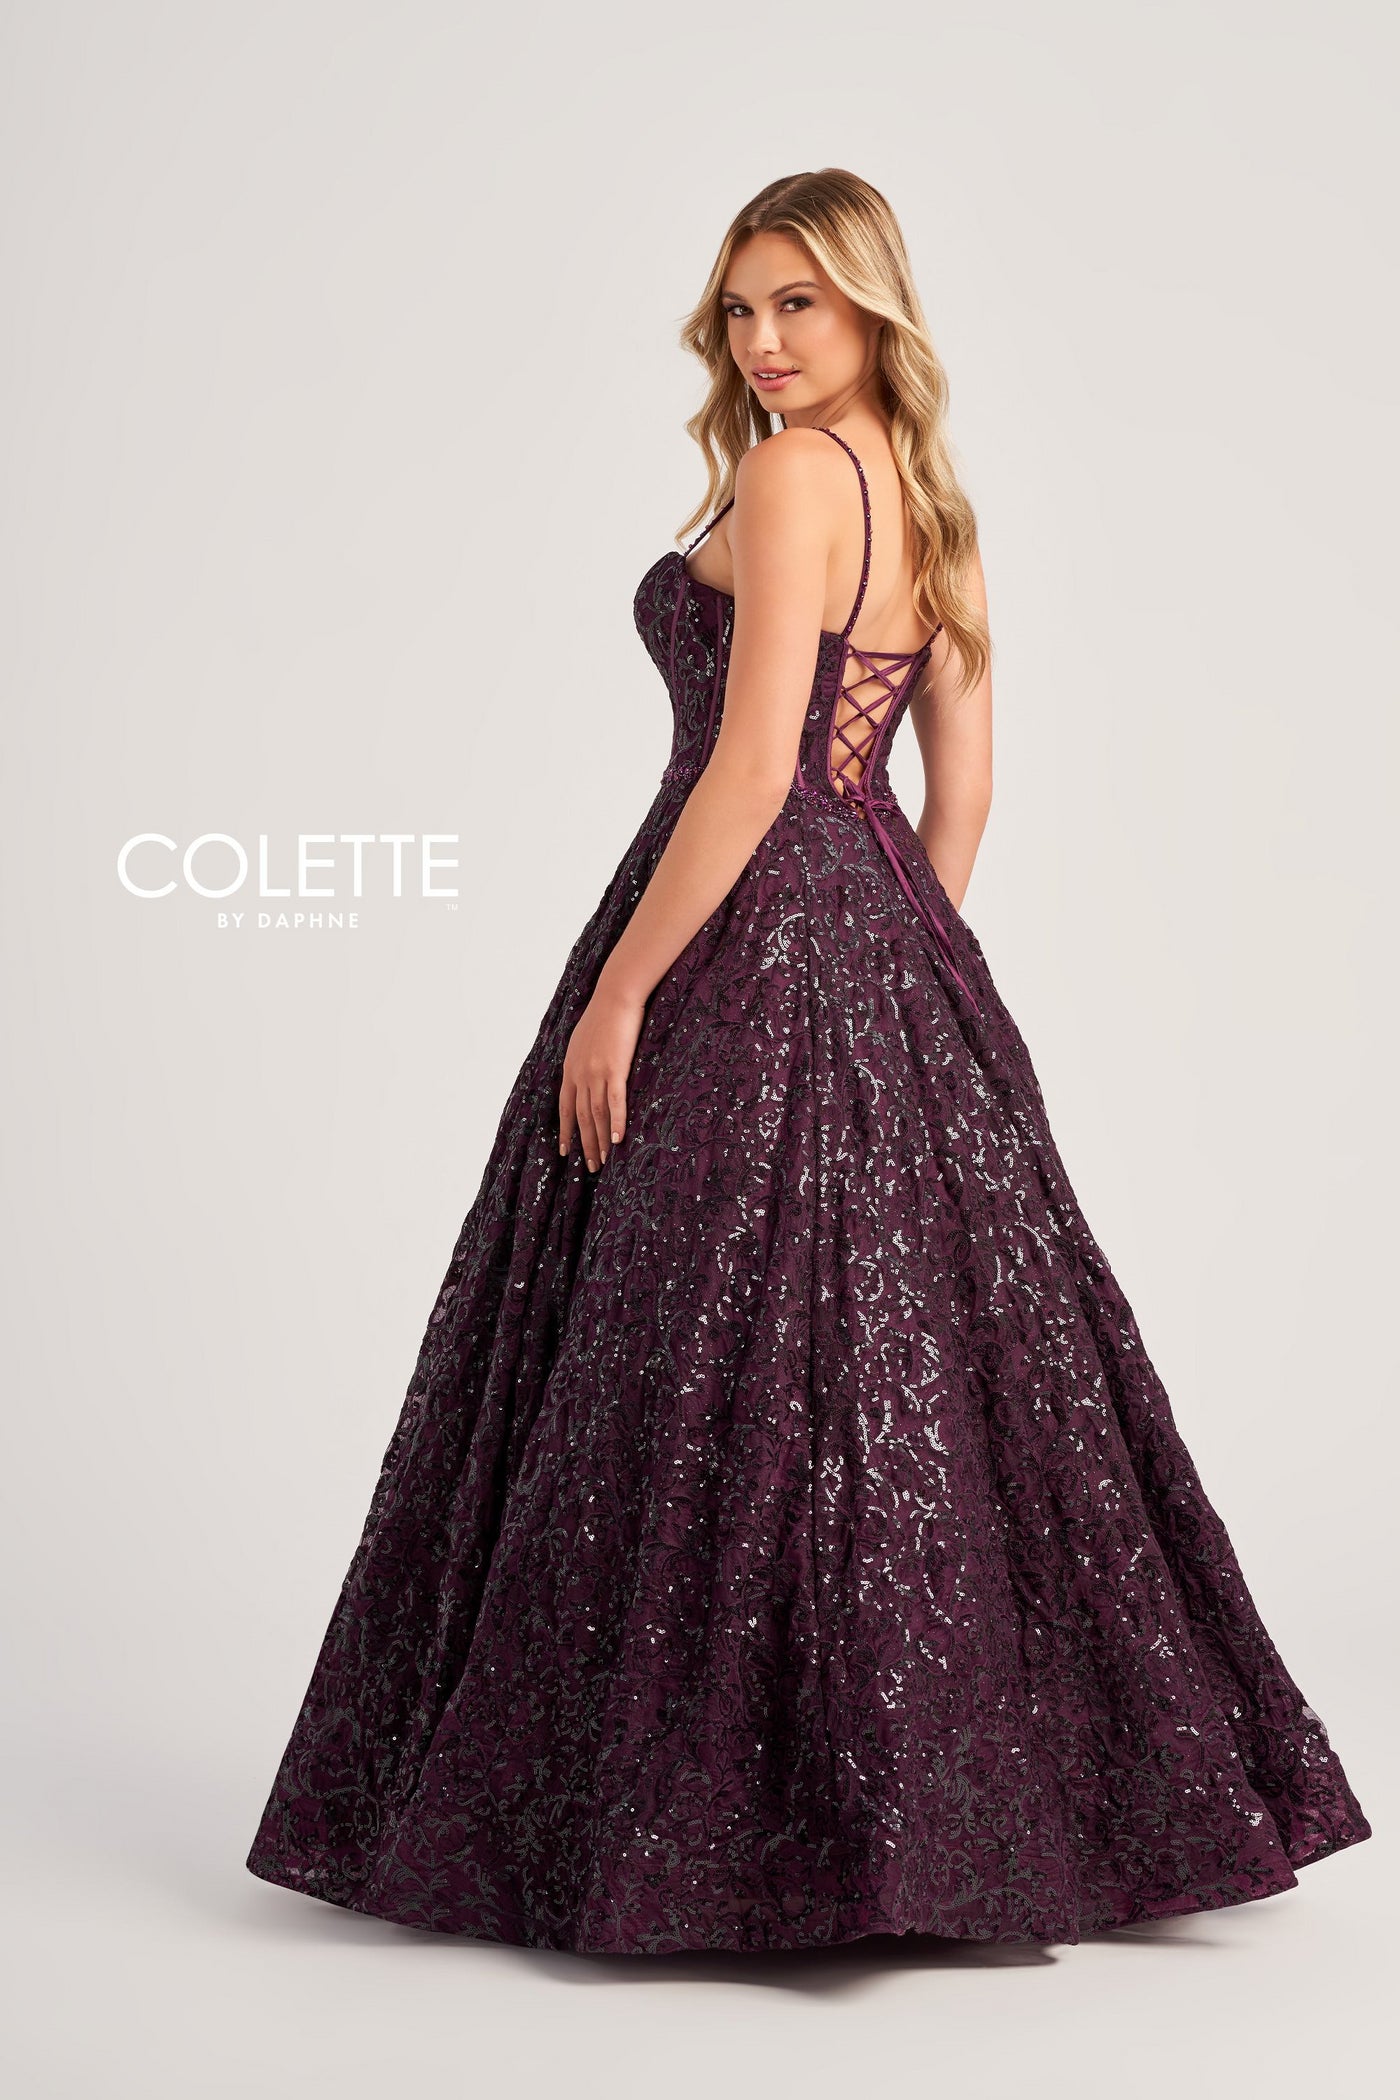 Colette CL5141